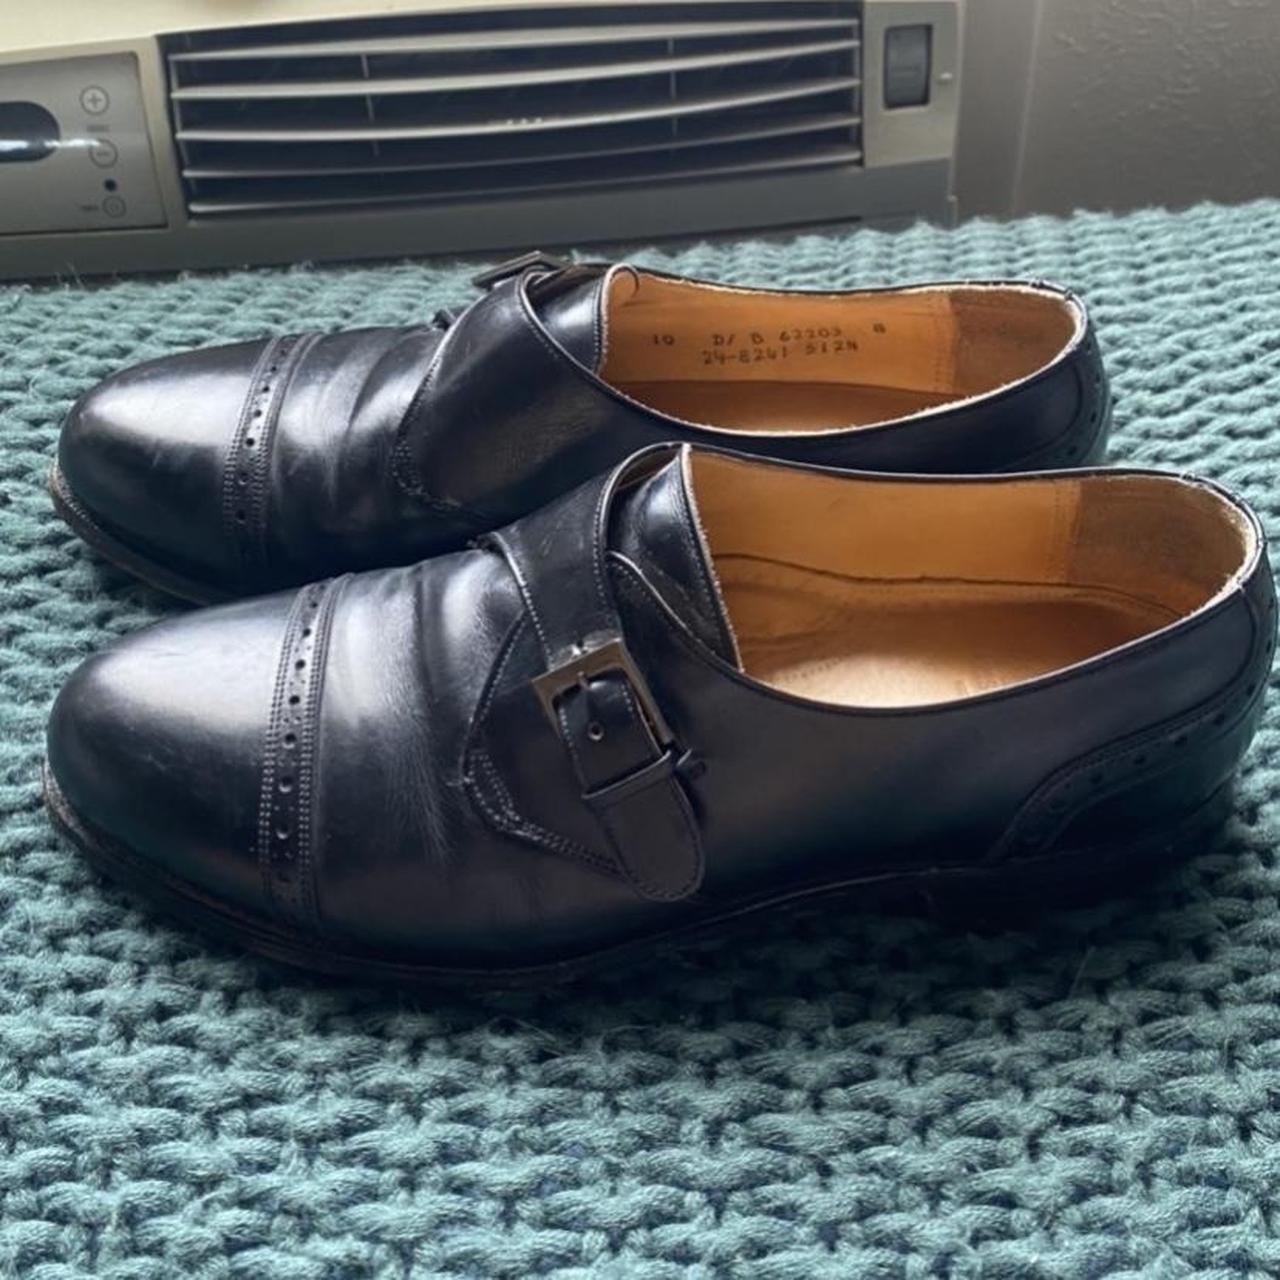 Men’s Retro Johnston & Murphy Aristocrat Shoes Size... - Depop